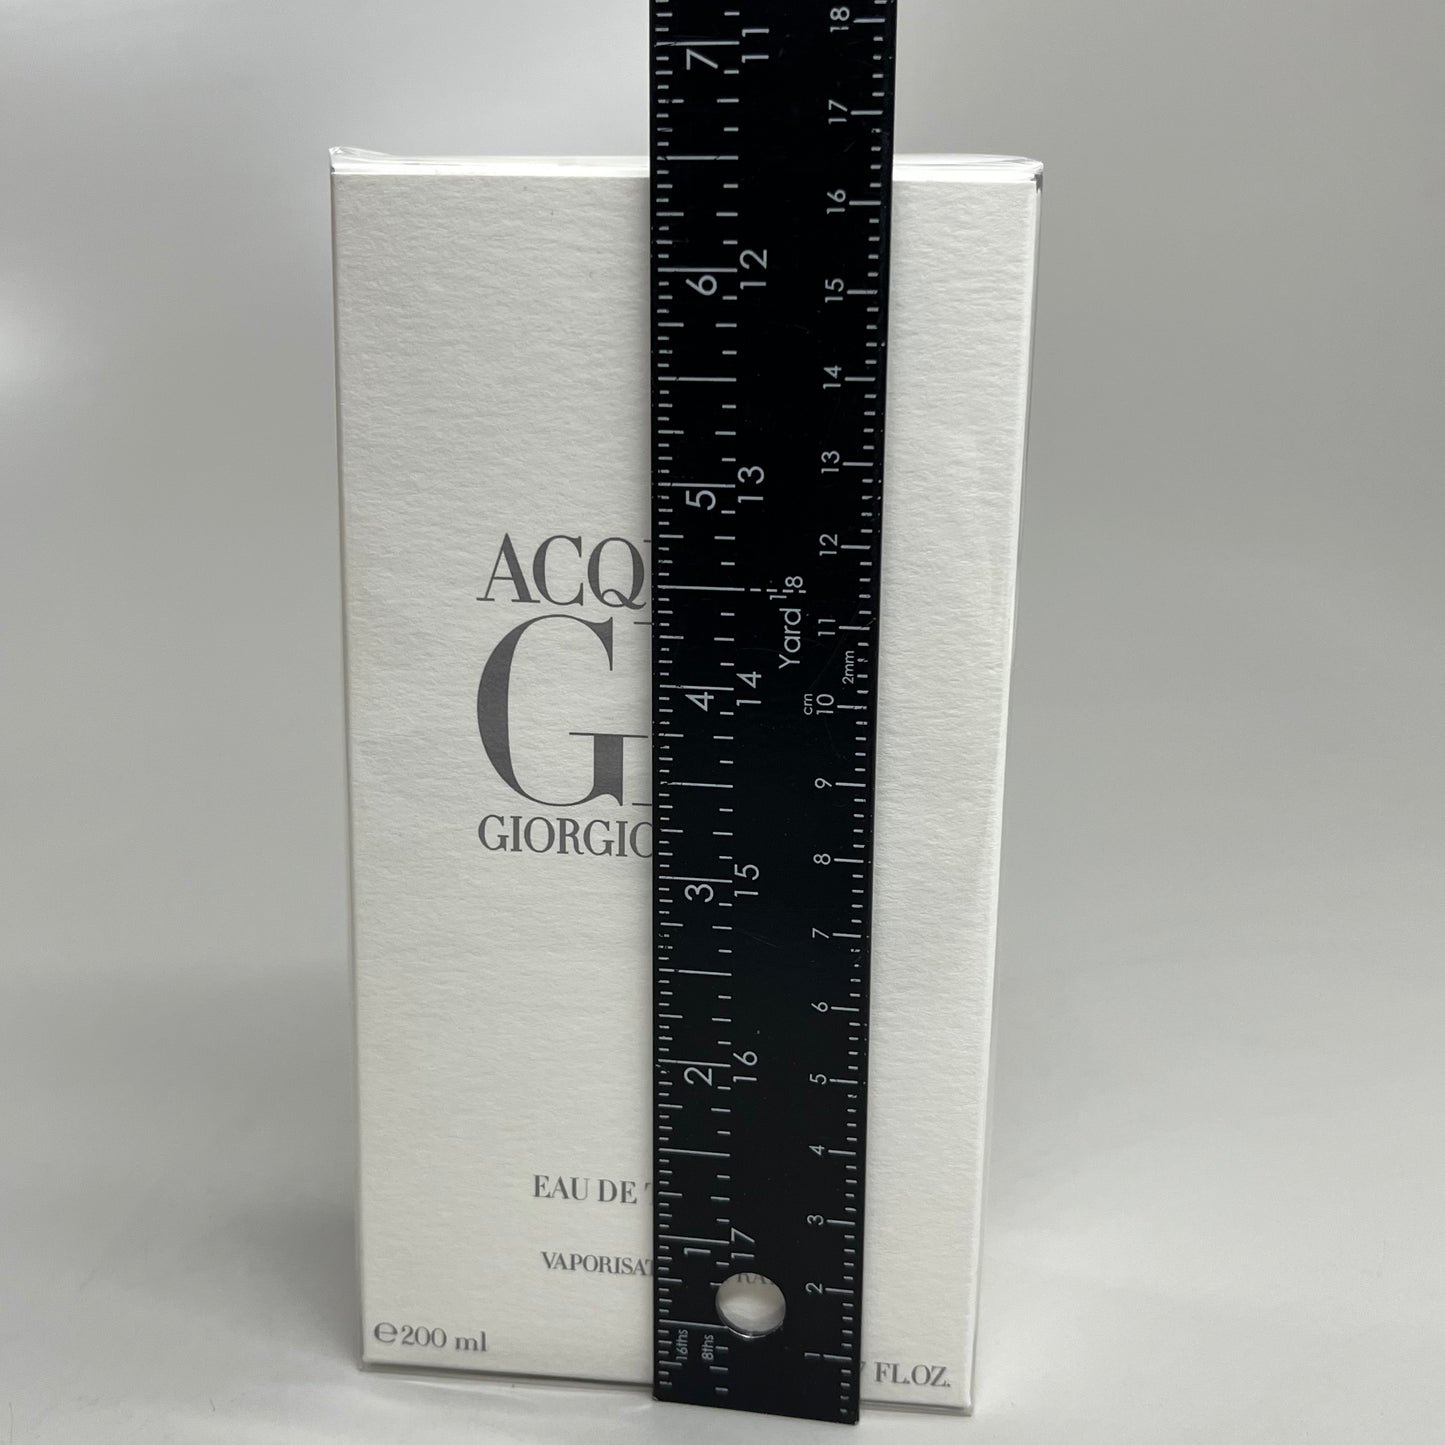 GIORGIO ARMANI Acqua Di Gio Eau De Toilette Spray Men 6.7 fl oz. / 200 ml (New)